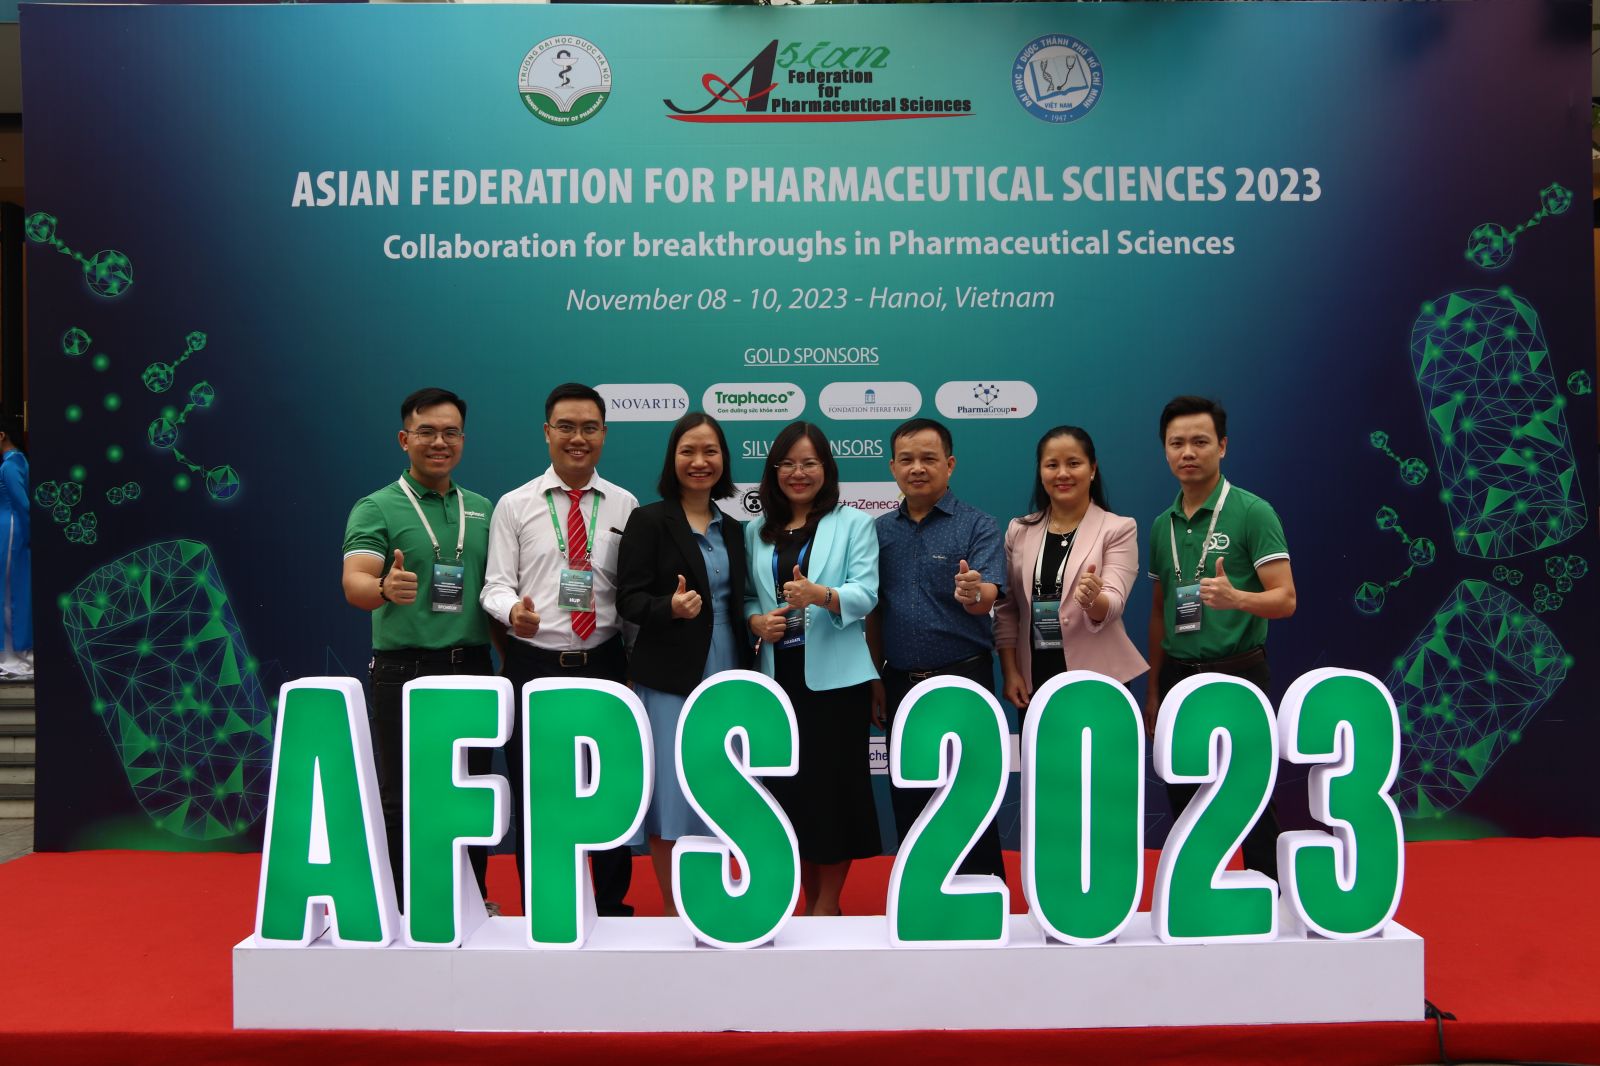 Bà Đào Thuý Hà, Phó Tổng Giám đốc Traphaco (đứng giữa) cùng đại diện Traphaco tham dự AFPS 2023.